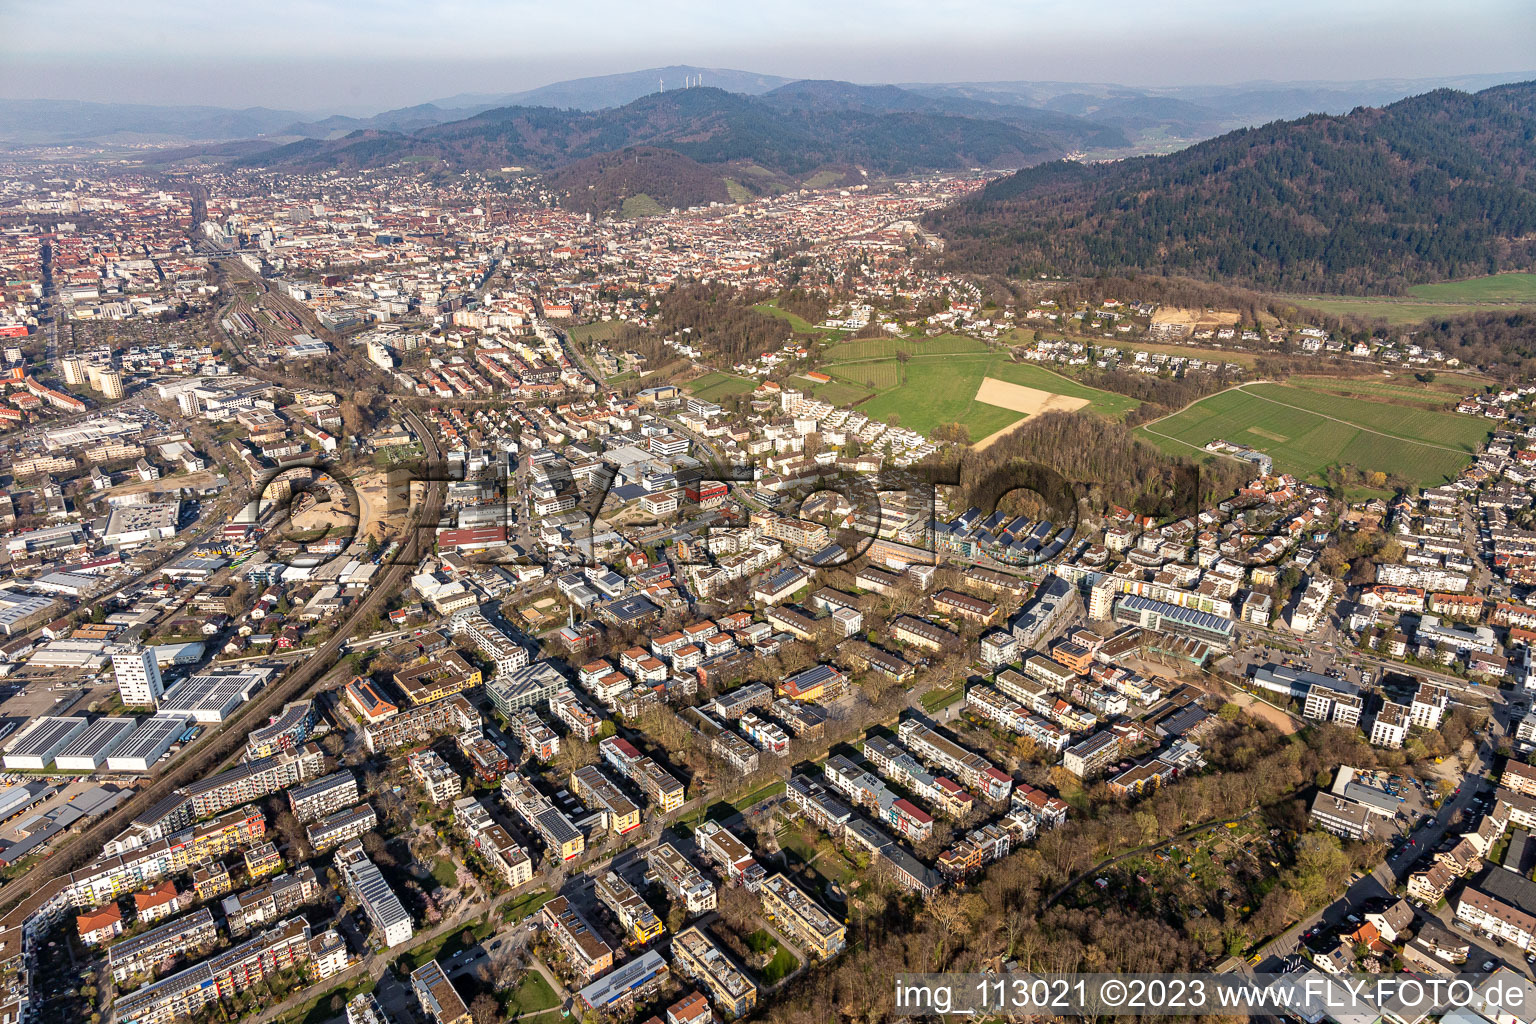 Vue aérienne de Centre-ville dans la zone urbaine à le quartier Vauban in Freiburg im Breisgau dans le département Bade-Wurtemberg, Allemagne